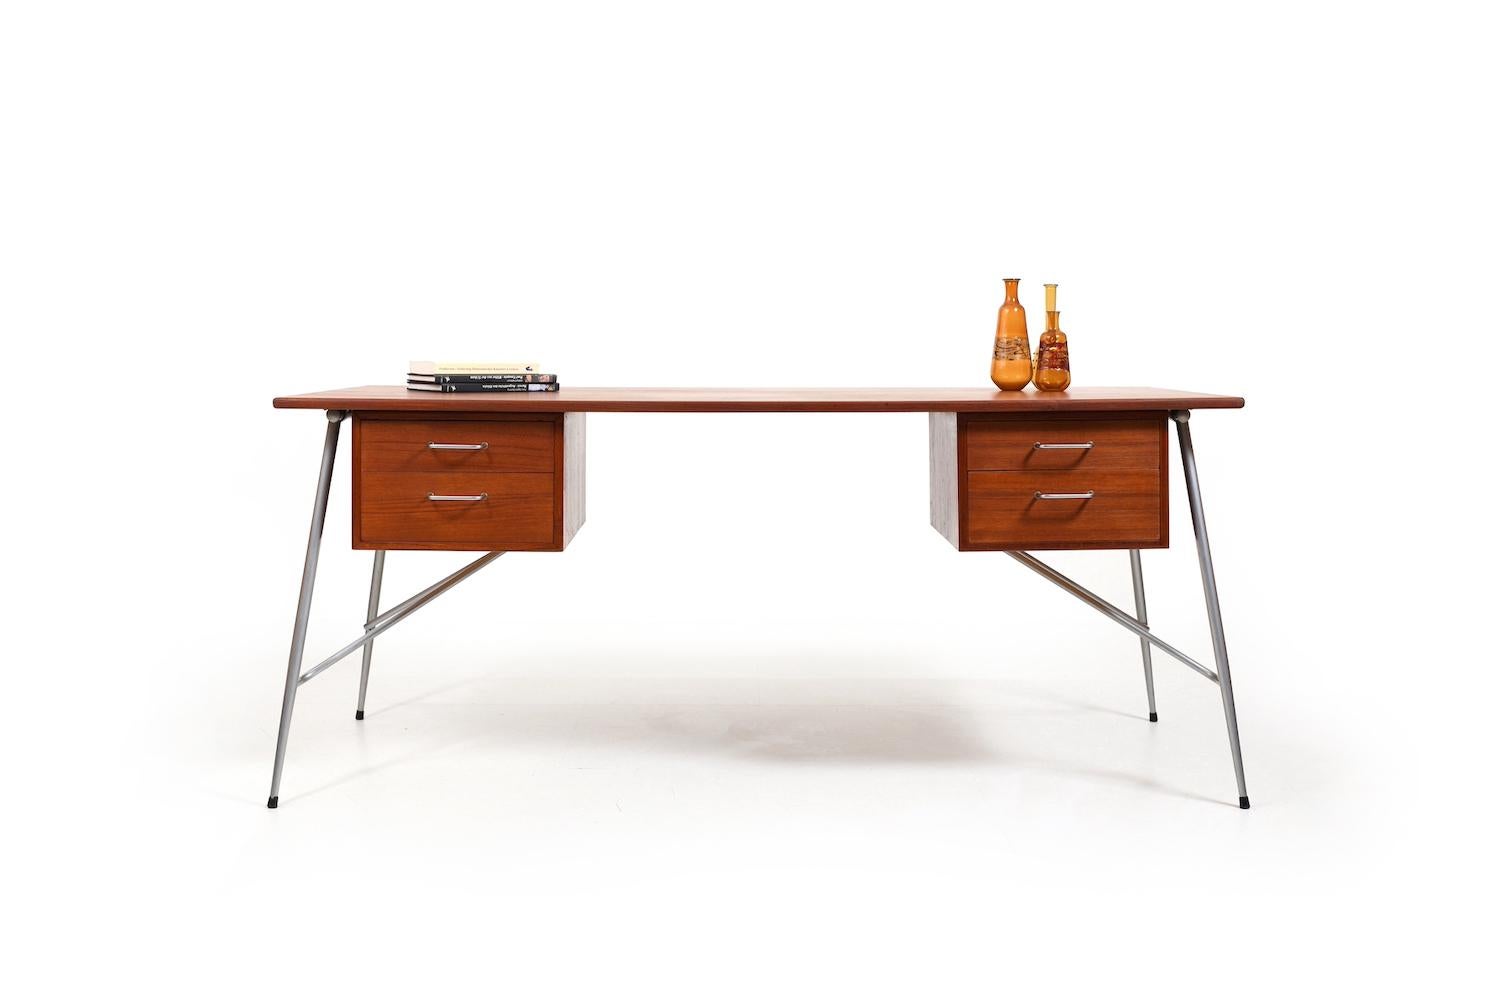 Freestanding teak desk, mod. 202 by Børge Mogensen for Søborg Møbler Denmark 1953. Elegant shape with fine steel frame and 4 drawers. Beautiful selected teak. Produced 1950s.